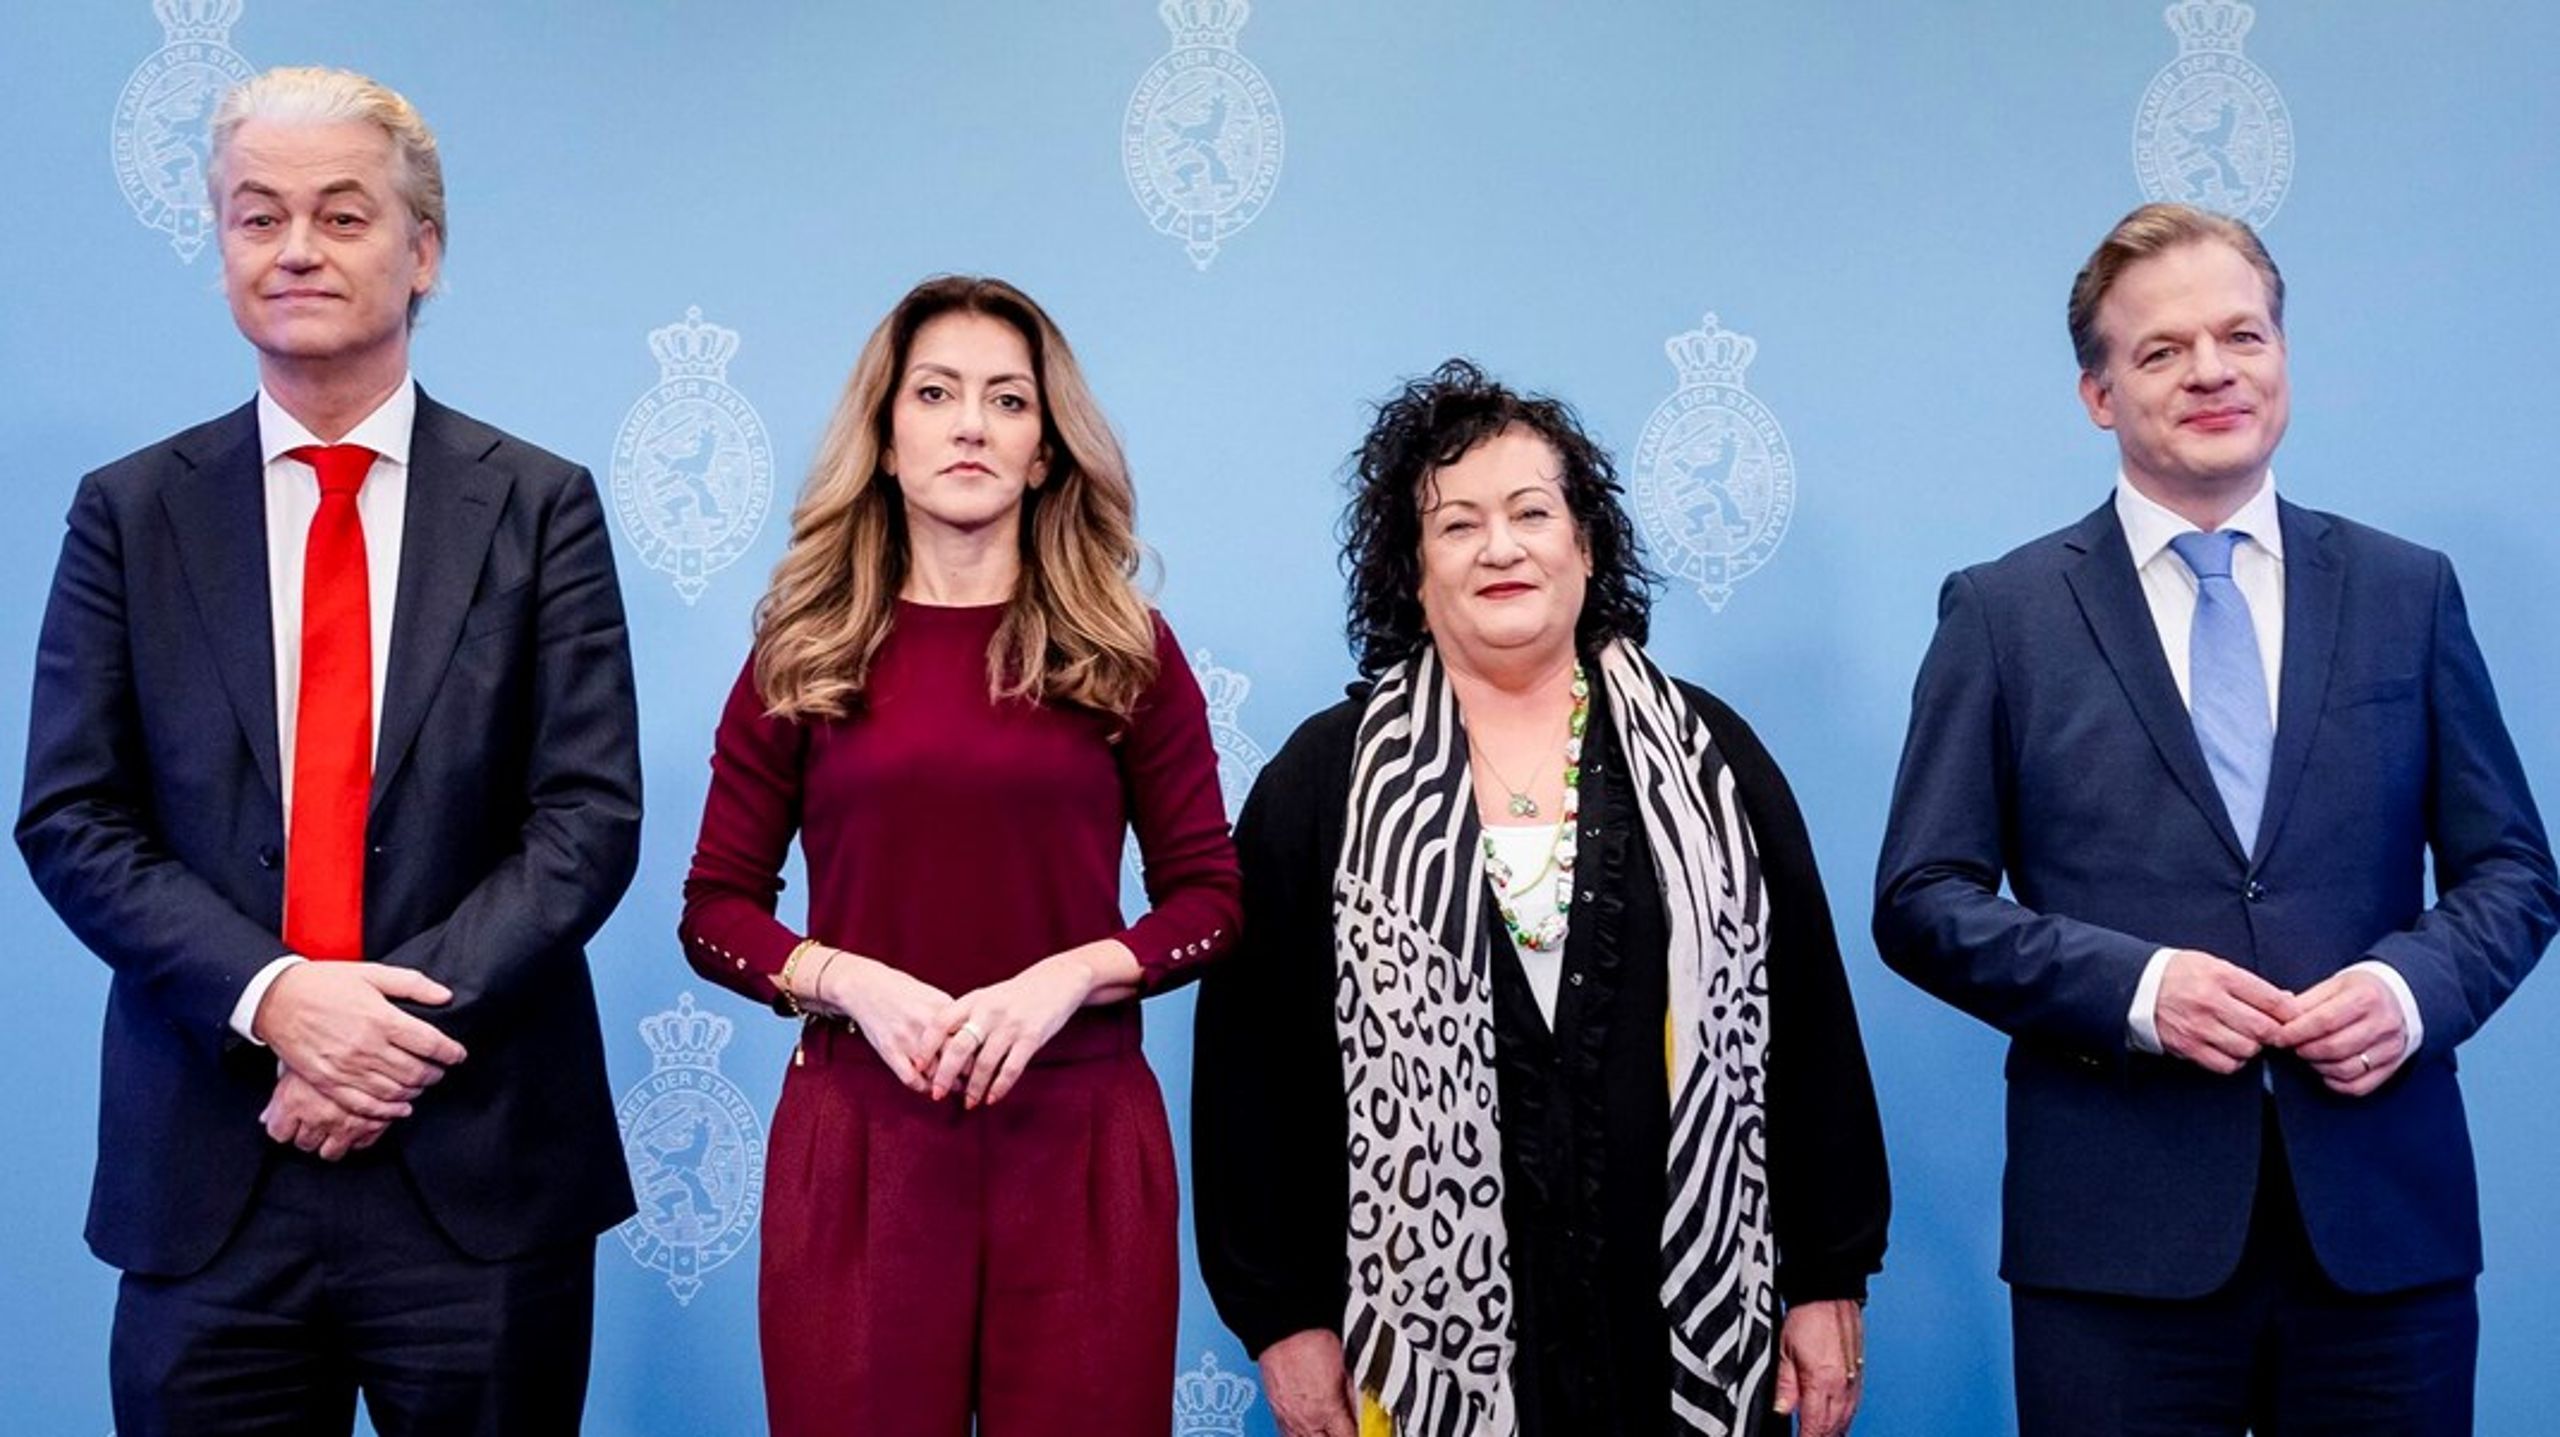 Det har taget snart seks måneder at få en regering på plads i Holland. Men nu har fire højrepartier taget hinanden i ed på blandt andet at stramme udlændingepolitikken.